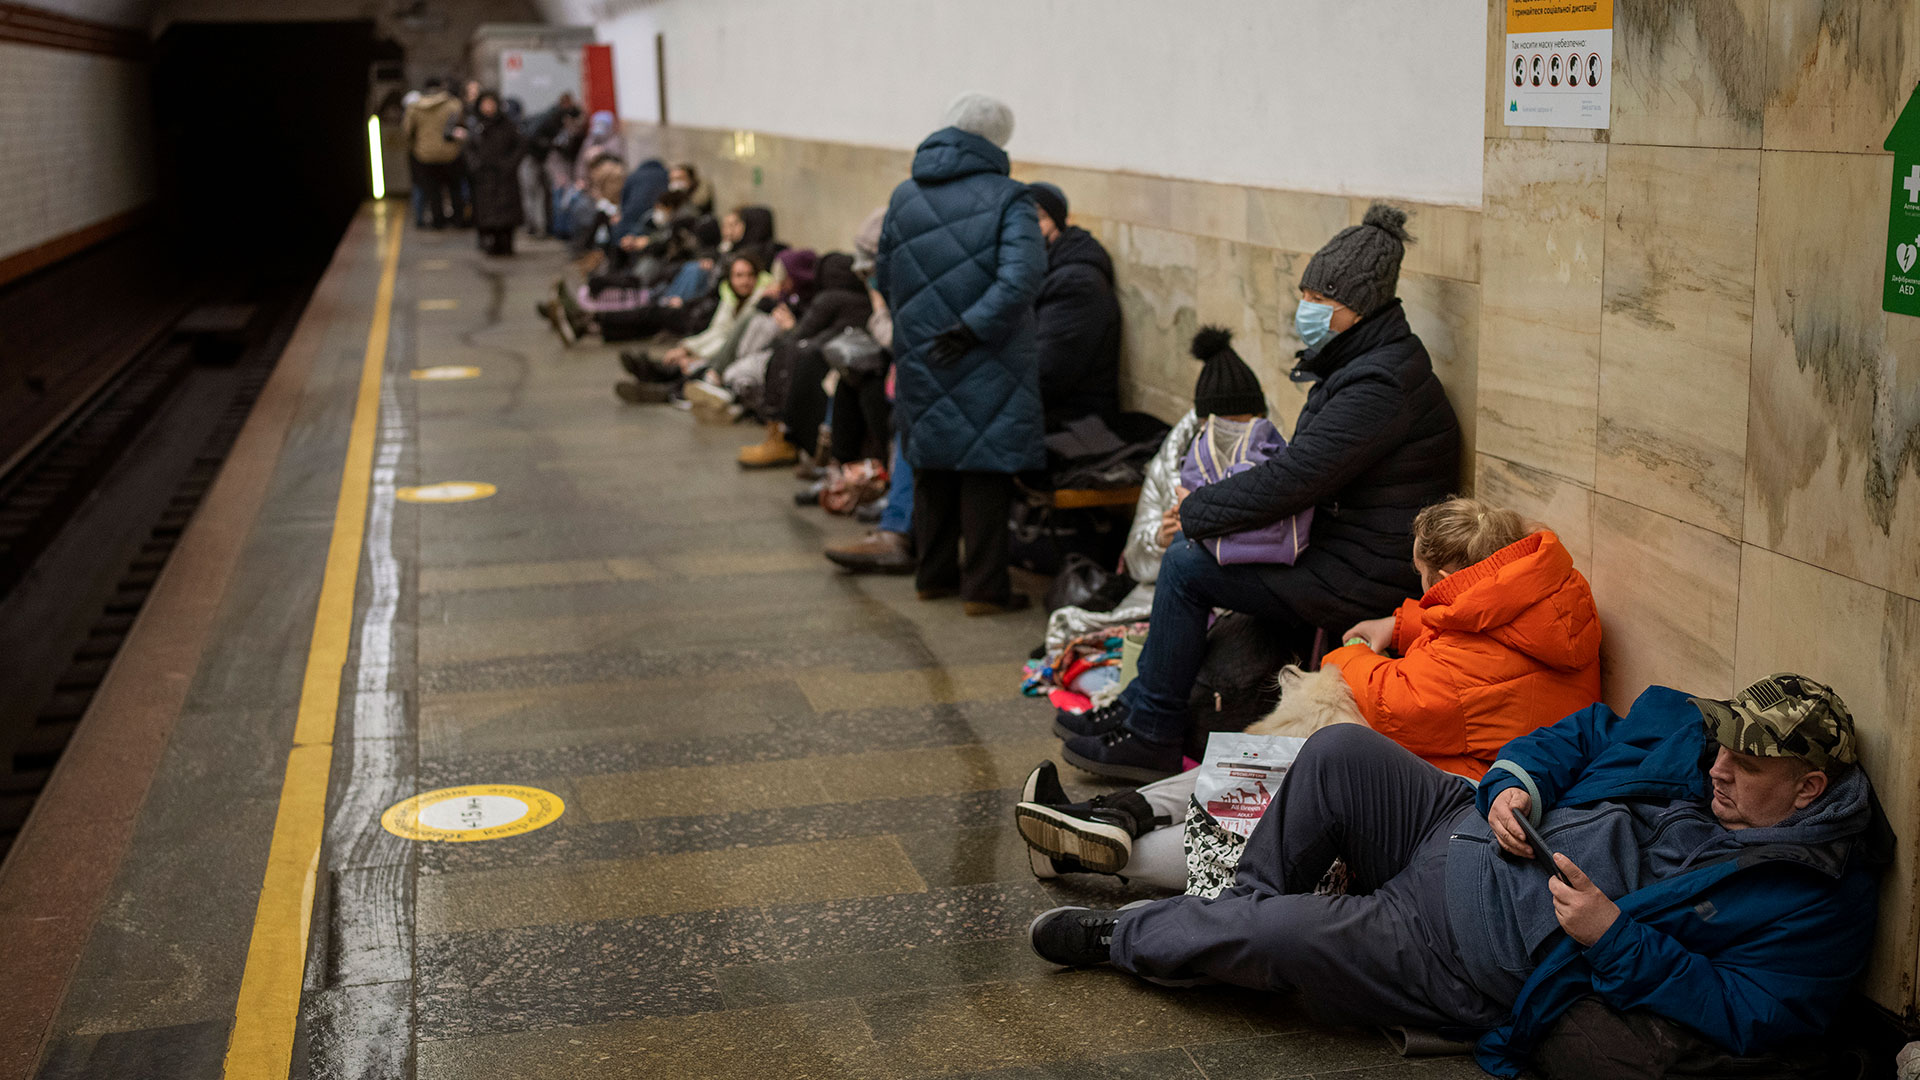 La gente descansa en una estación del metro de Kiev que fue usado como refugio antibombas, el jueves 24 de febrero de 2022, en Kiev, Ucrania. (AP Foto/Emilio Morenatti)